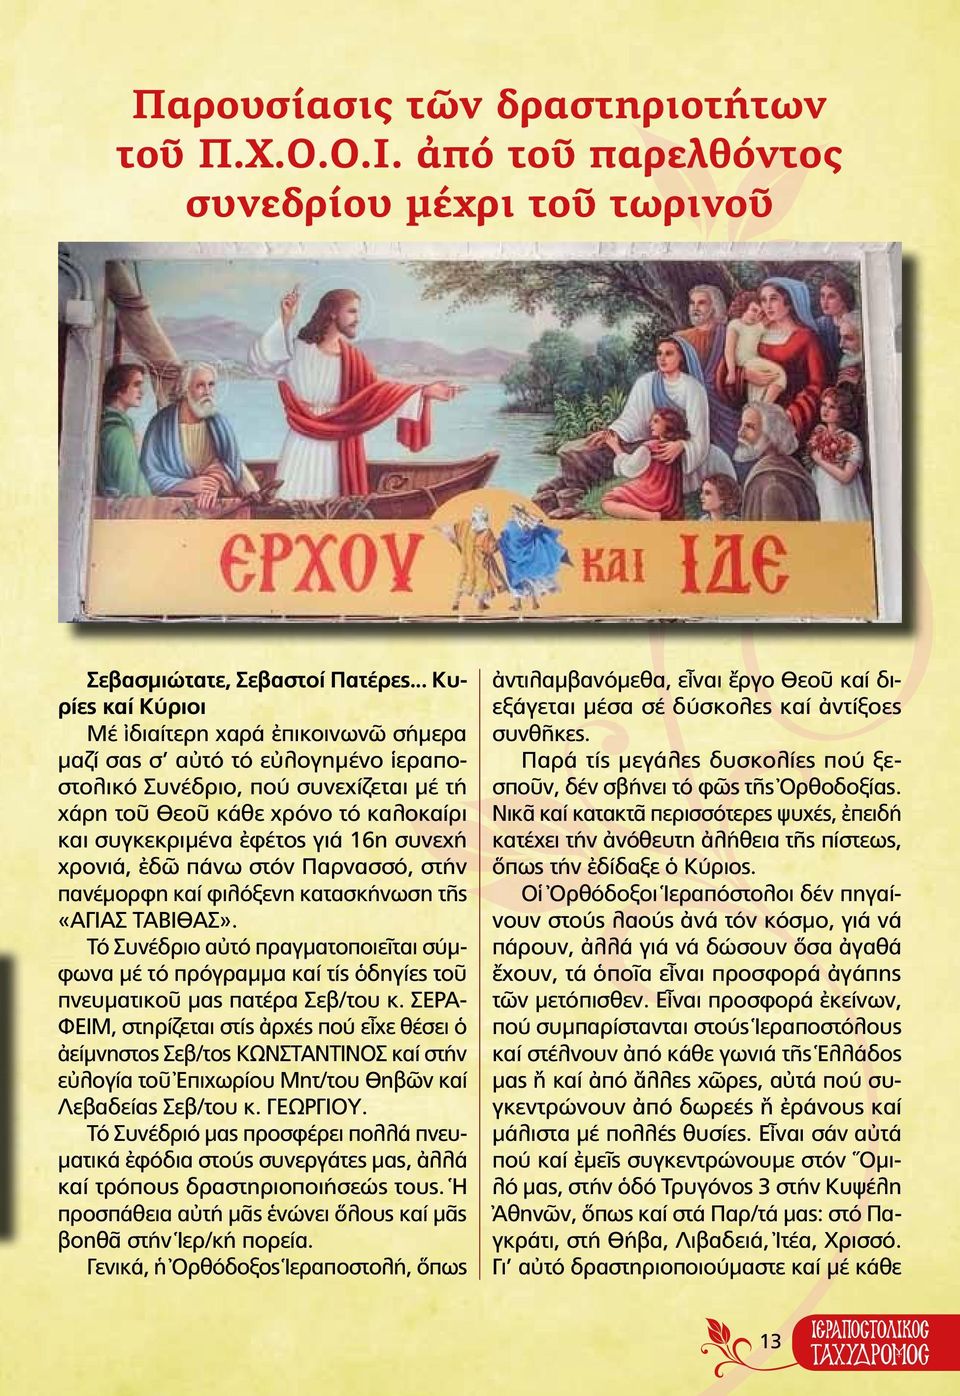 16η συνεχή χρονιά, ἐδῶ πάνω στόν Παρνασσό, στήν πανέμορφη καί φιλόξενη κατασκήνωση τῆς «Αγίας ΤΑΒΙΘΑΣ».